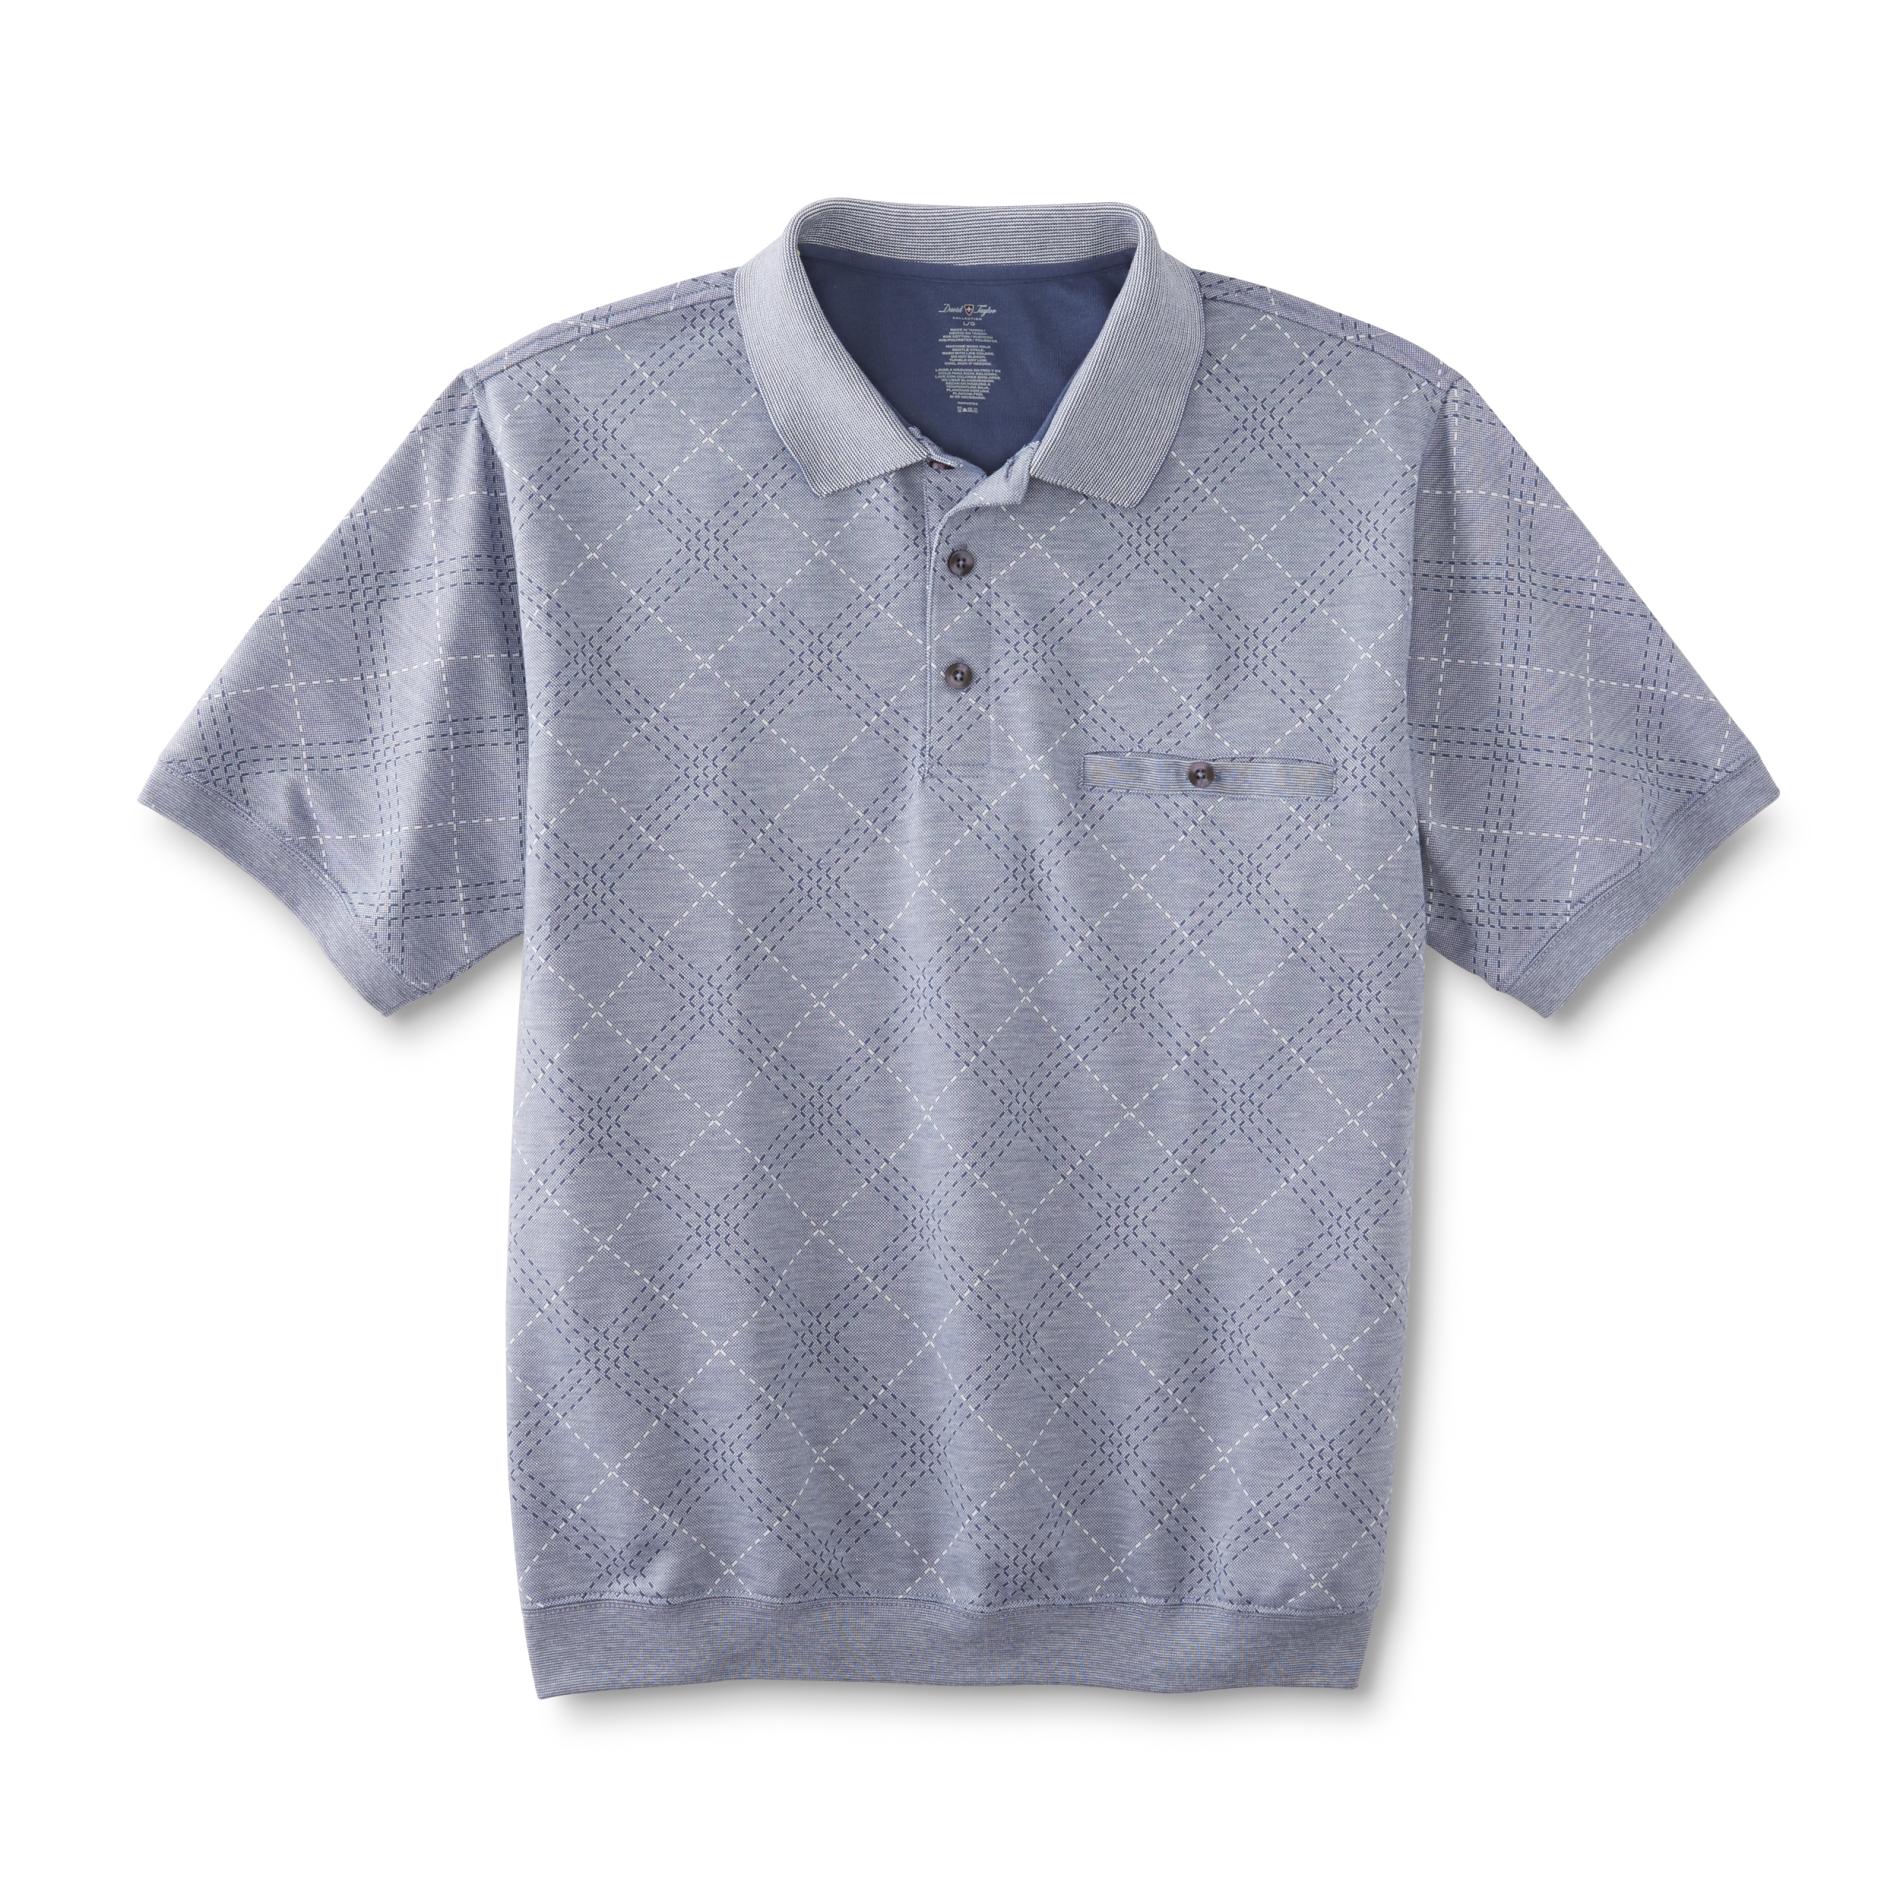 David Taylor Collection Men's Polo Shirt - Argyle